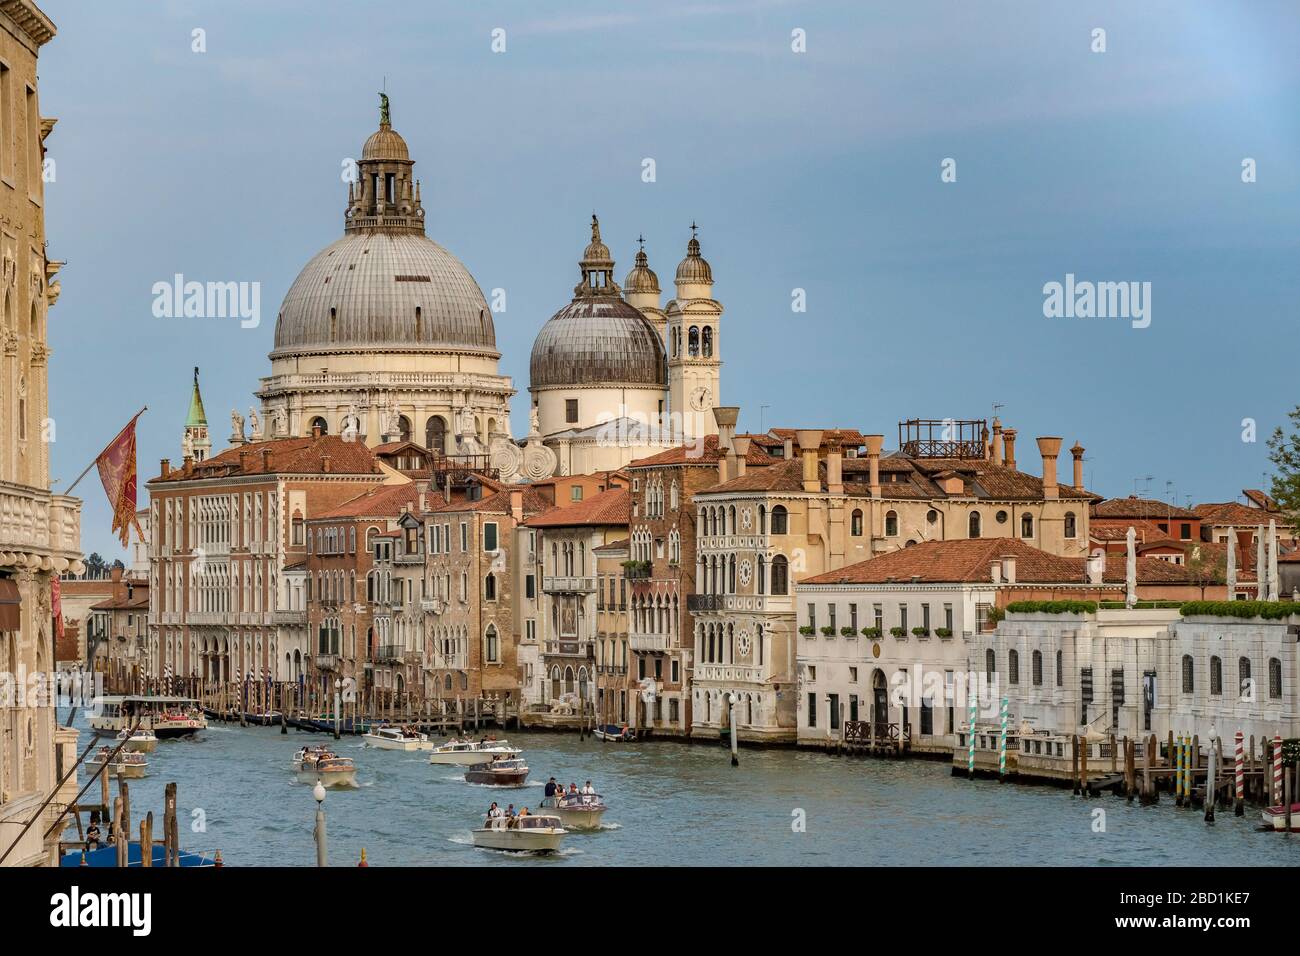 Des bateaux-taxis et un vaporetto naviguant le long du Grand Canal avec la basilique Santa Maria della Salute en arrière-plan, Venise, Italie Banque D'Images